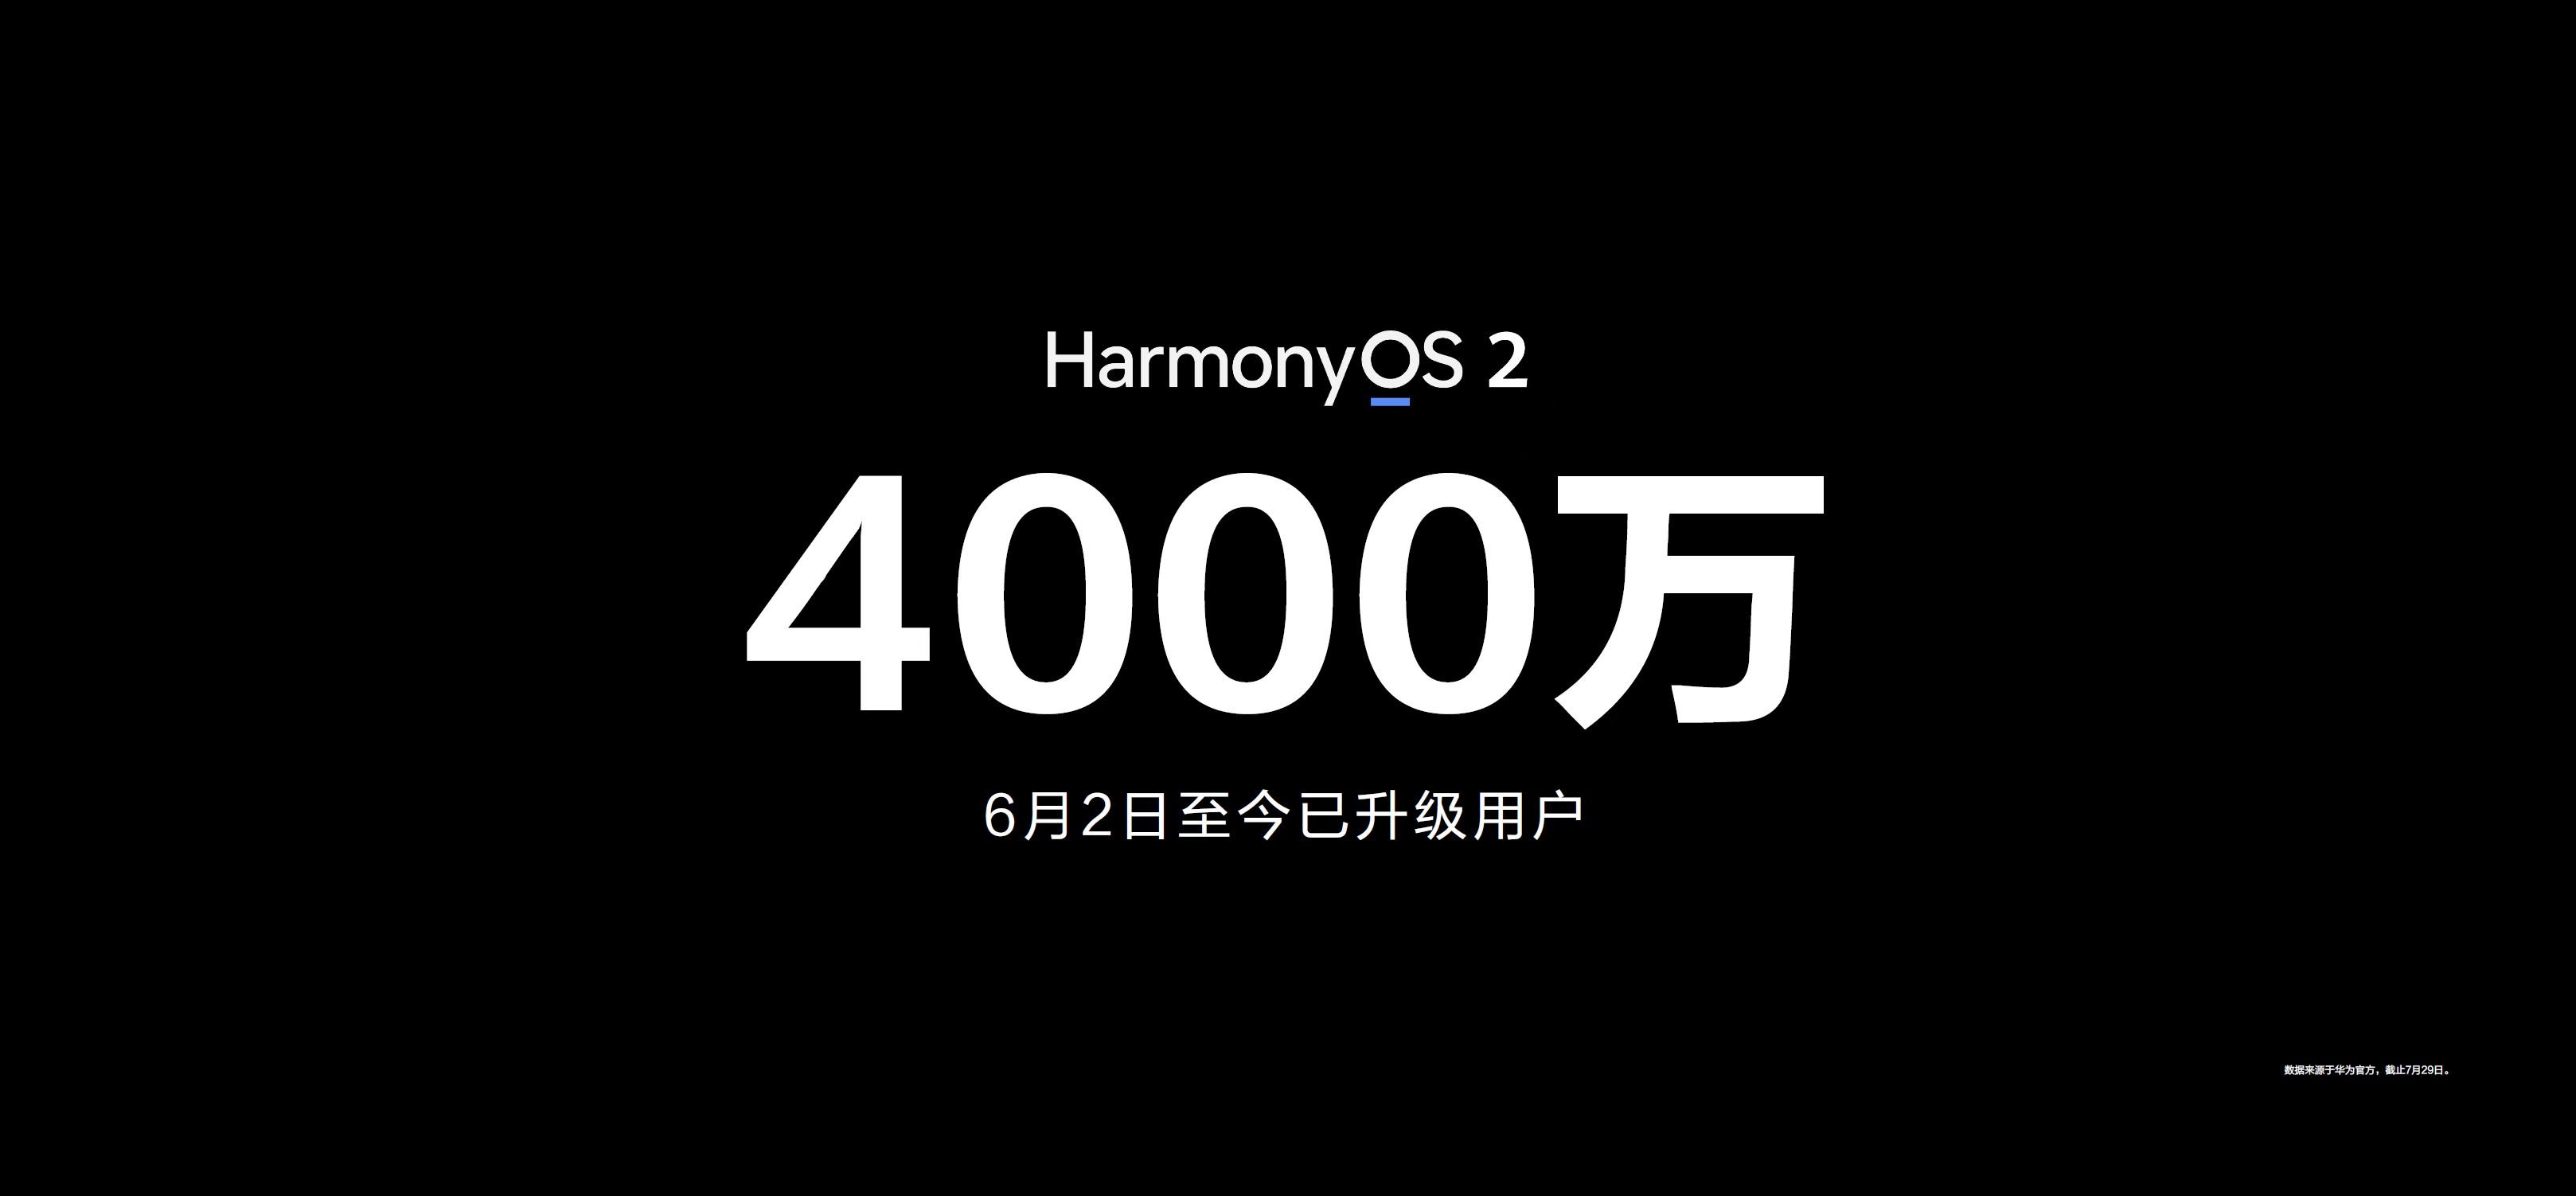 发布会上发布的华为P50系列即搭载了HarmonyOS2带来更流畅便捷的操作体验